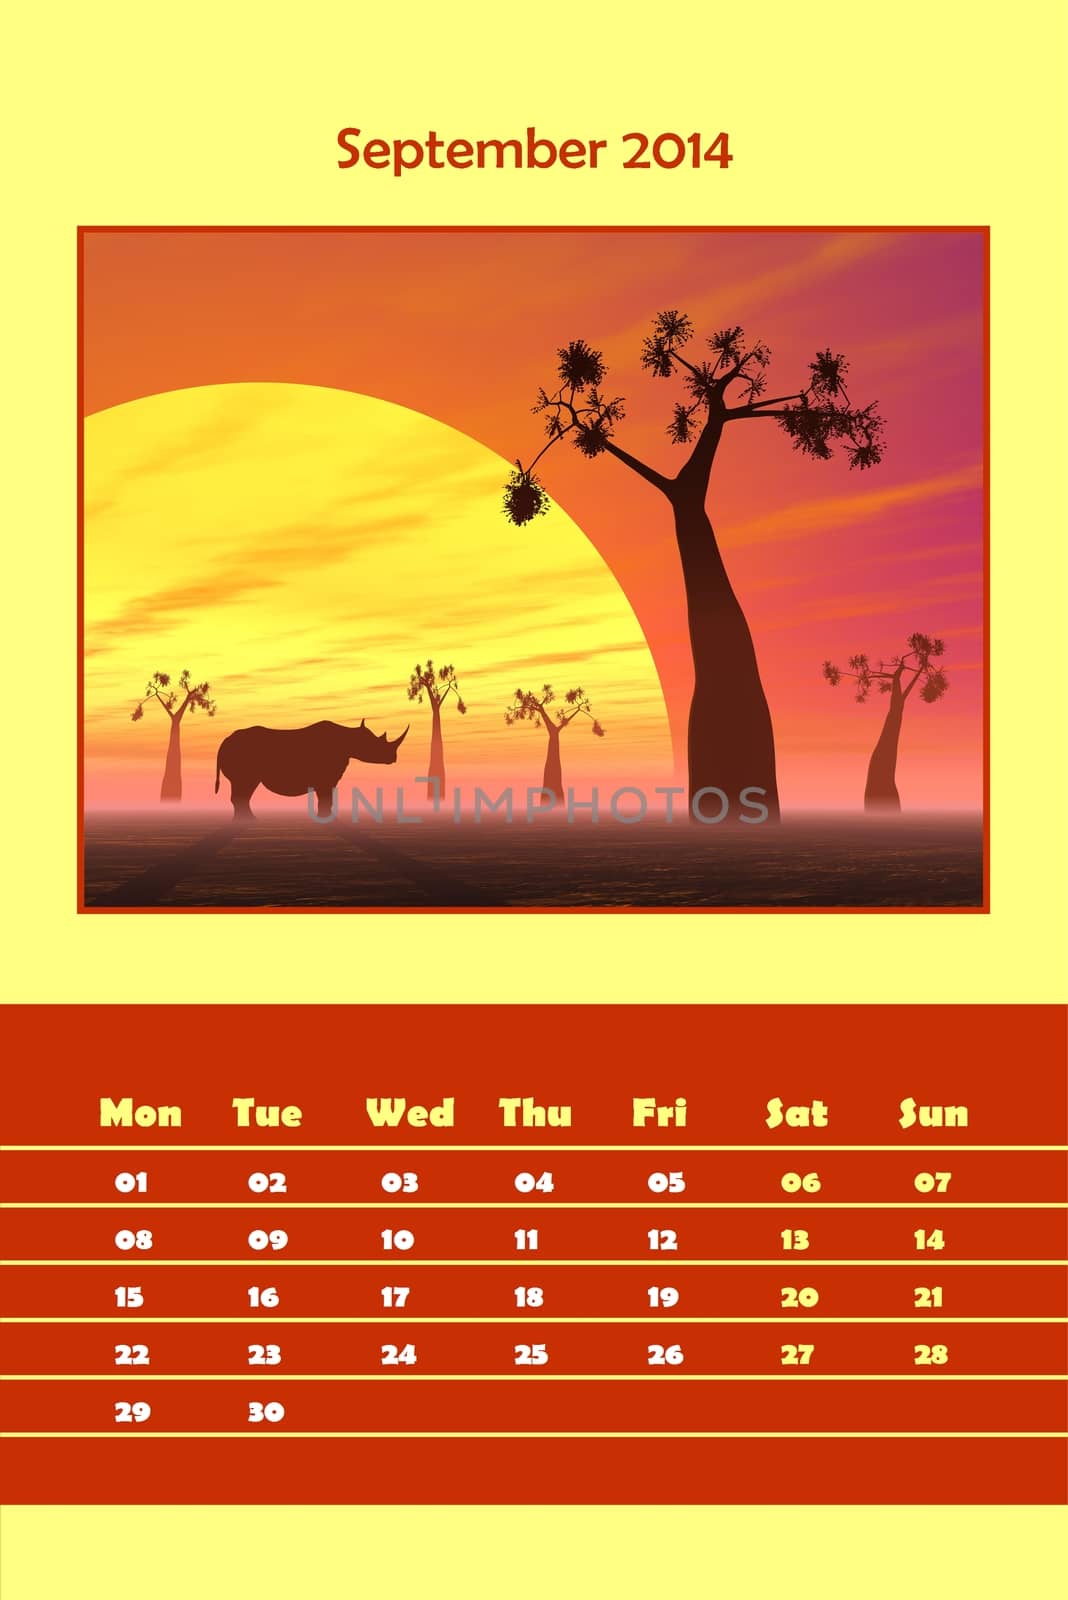 Safari calendar for 2014 - september by Elenaphotos21